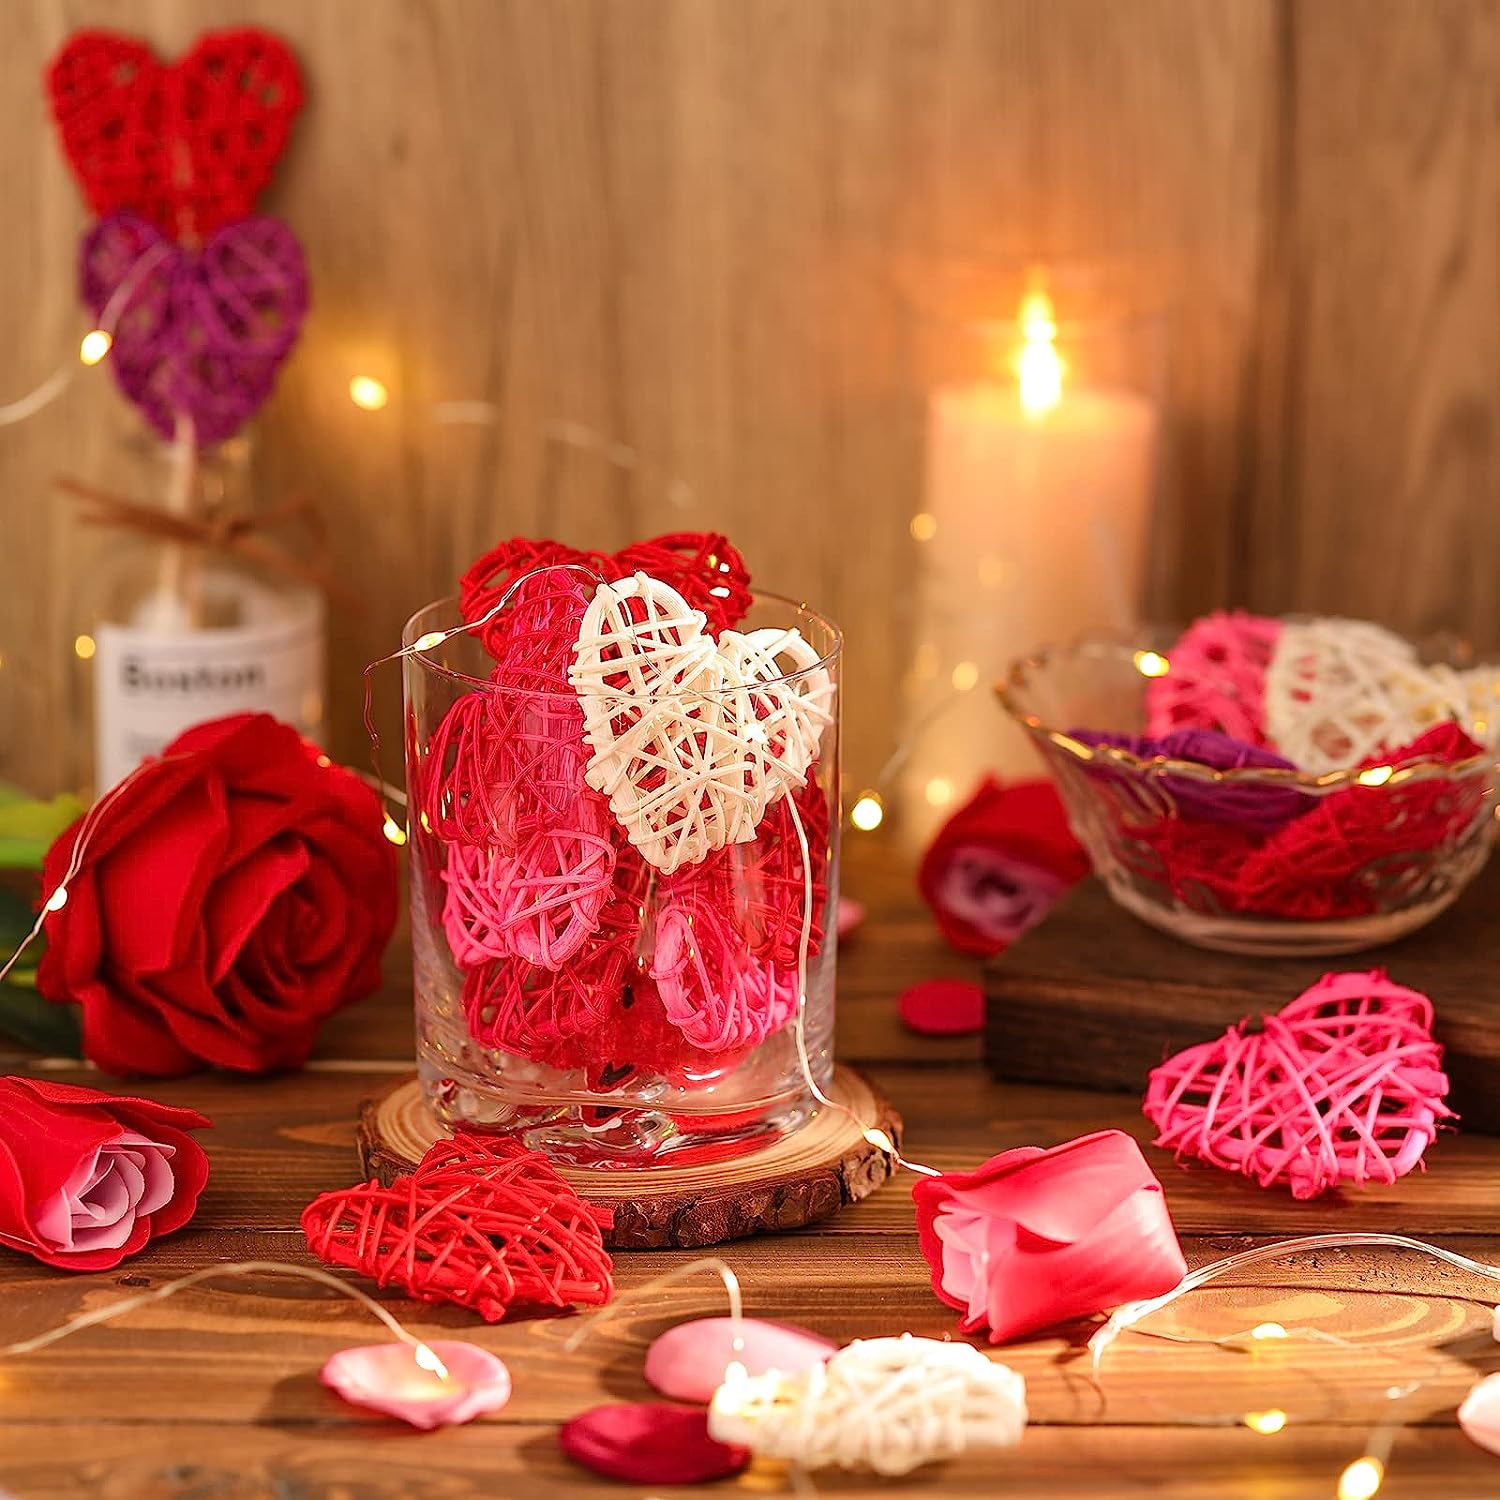 30 Pcs Wicker Rattan Heart Shaped Balls 2.36 Inches DIY Craft Vase Filler  Valentines Day Vase Filler Decor Balls Red Pink Rose Red Decorative Vase